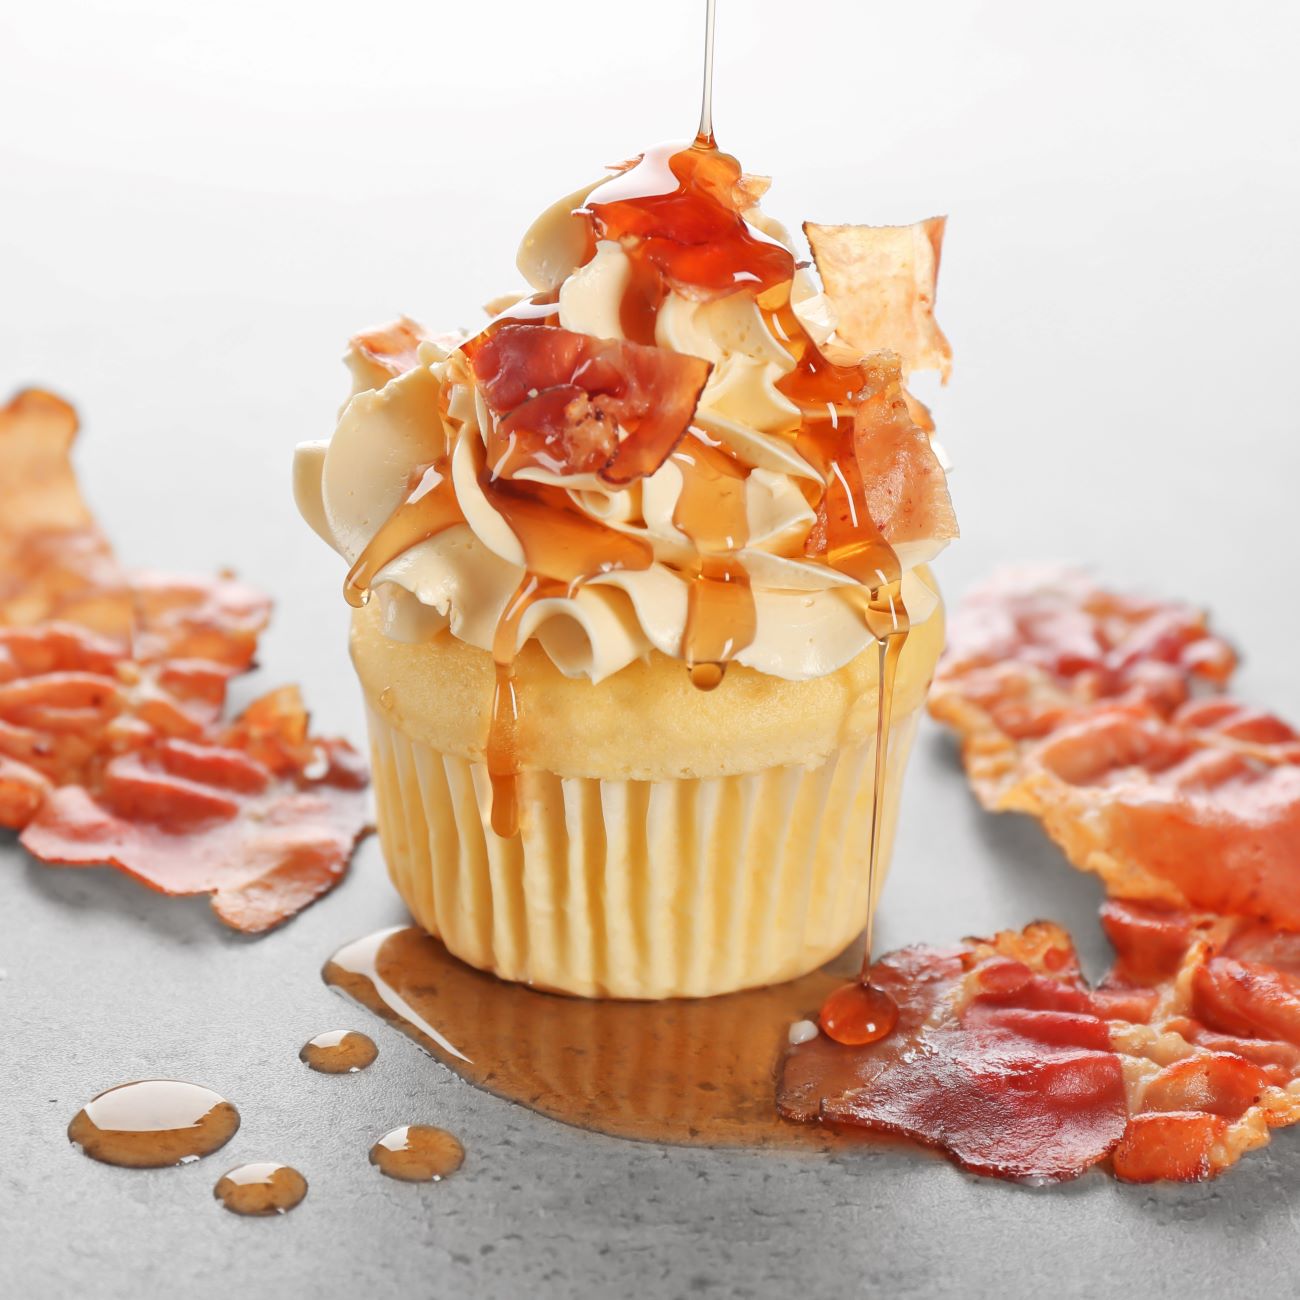 Bacon-Cupcakes mit Frischkäse-Frosting werden nah und frontal gezeigt.